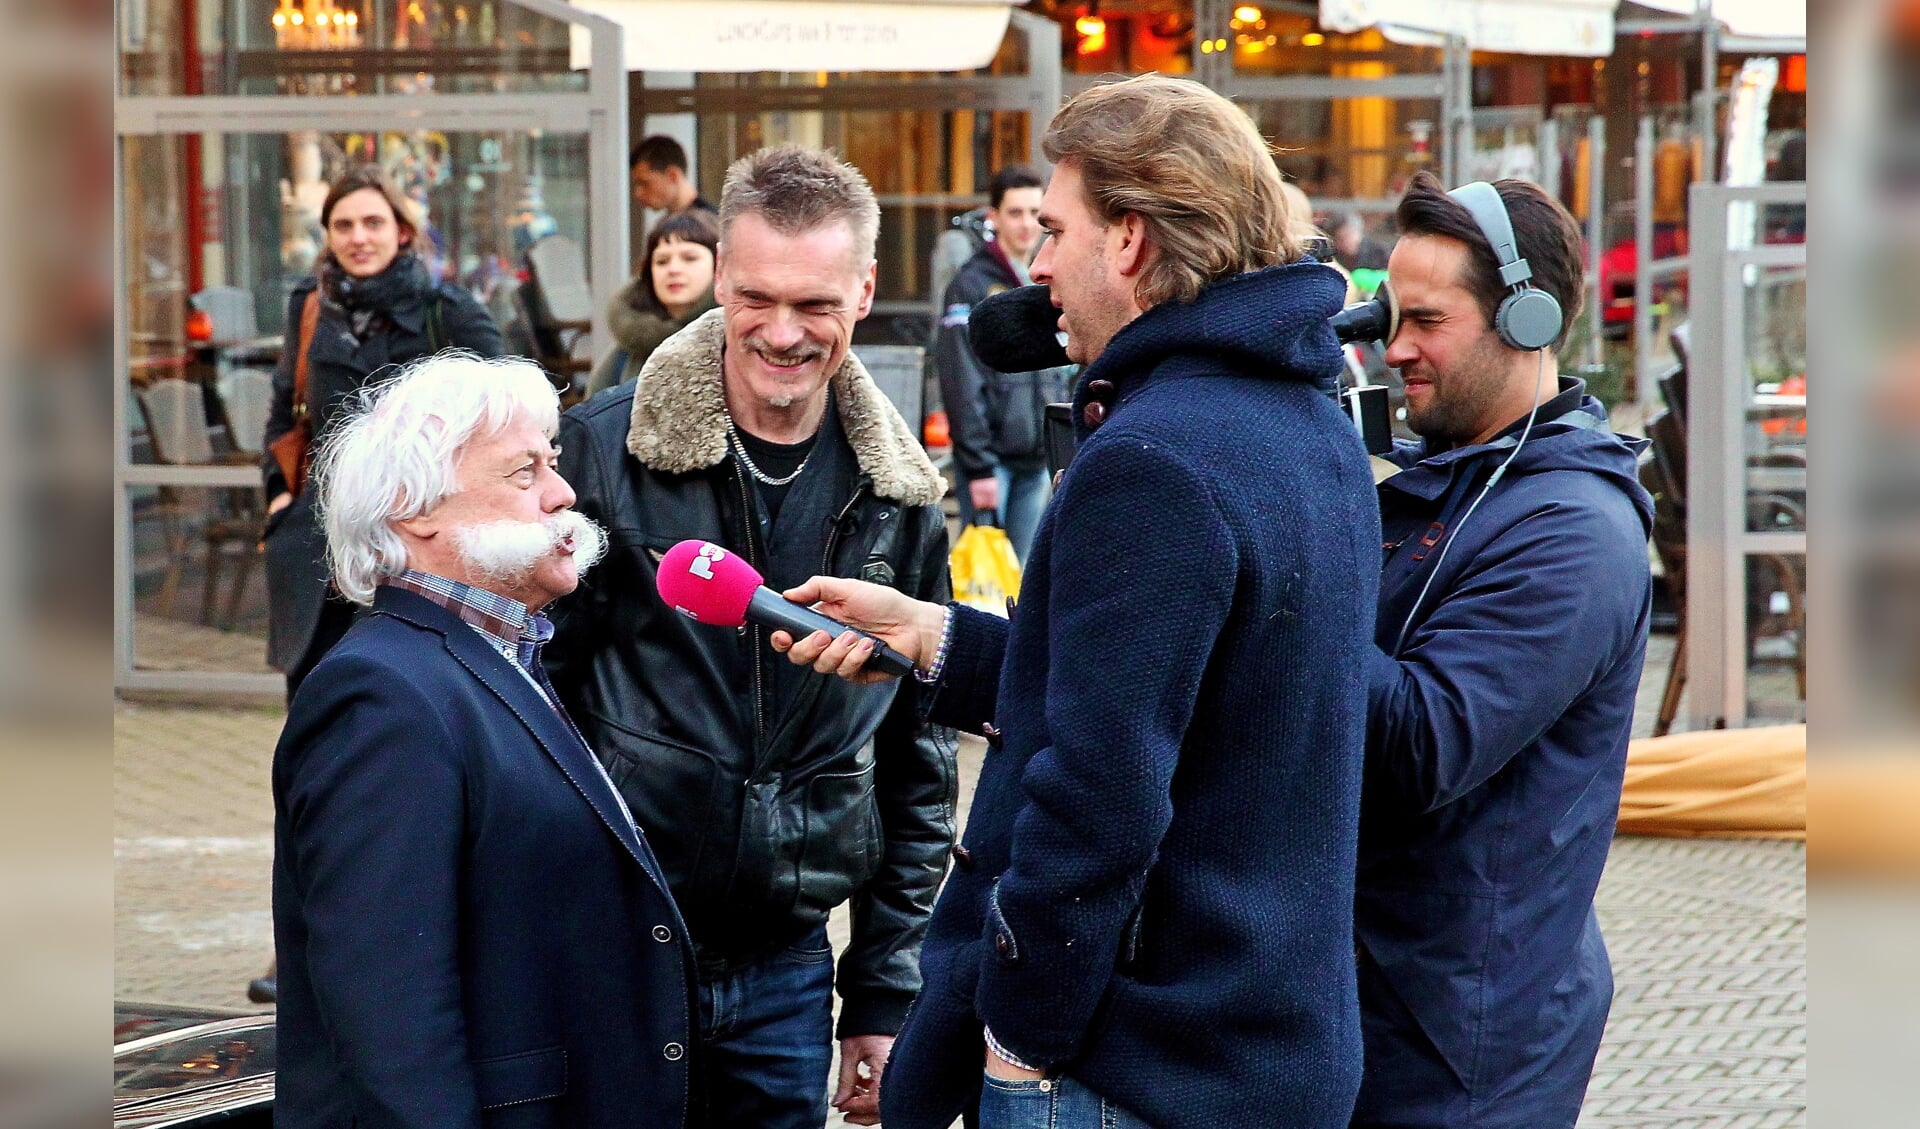 Martin Stoelinga weet met enige regelmaat het landelijke nieuws te halen. Hier is hij in gesprek met Rutger Castricum van Powned. Afgelopen week werd hij gevolgd door een tv-ploeg van EenVandaag. 